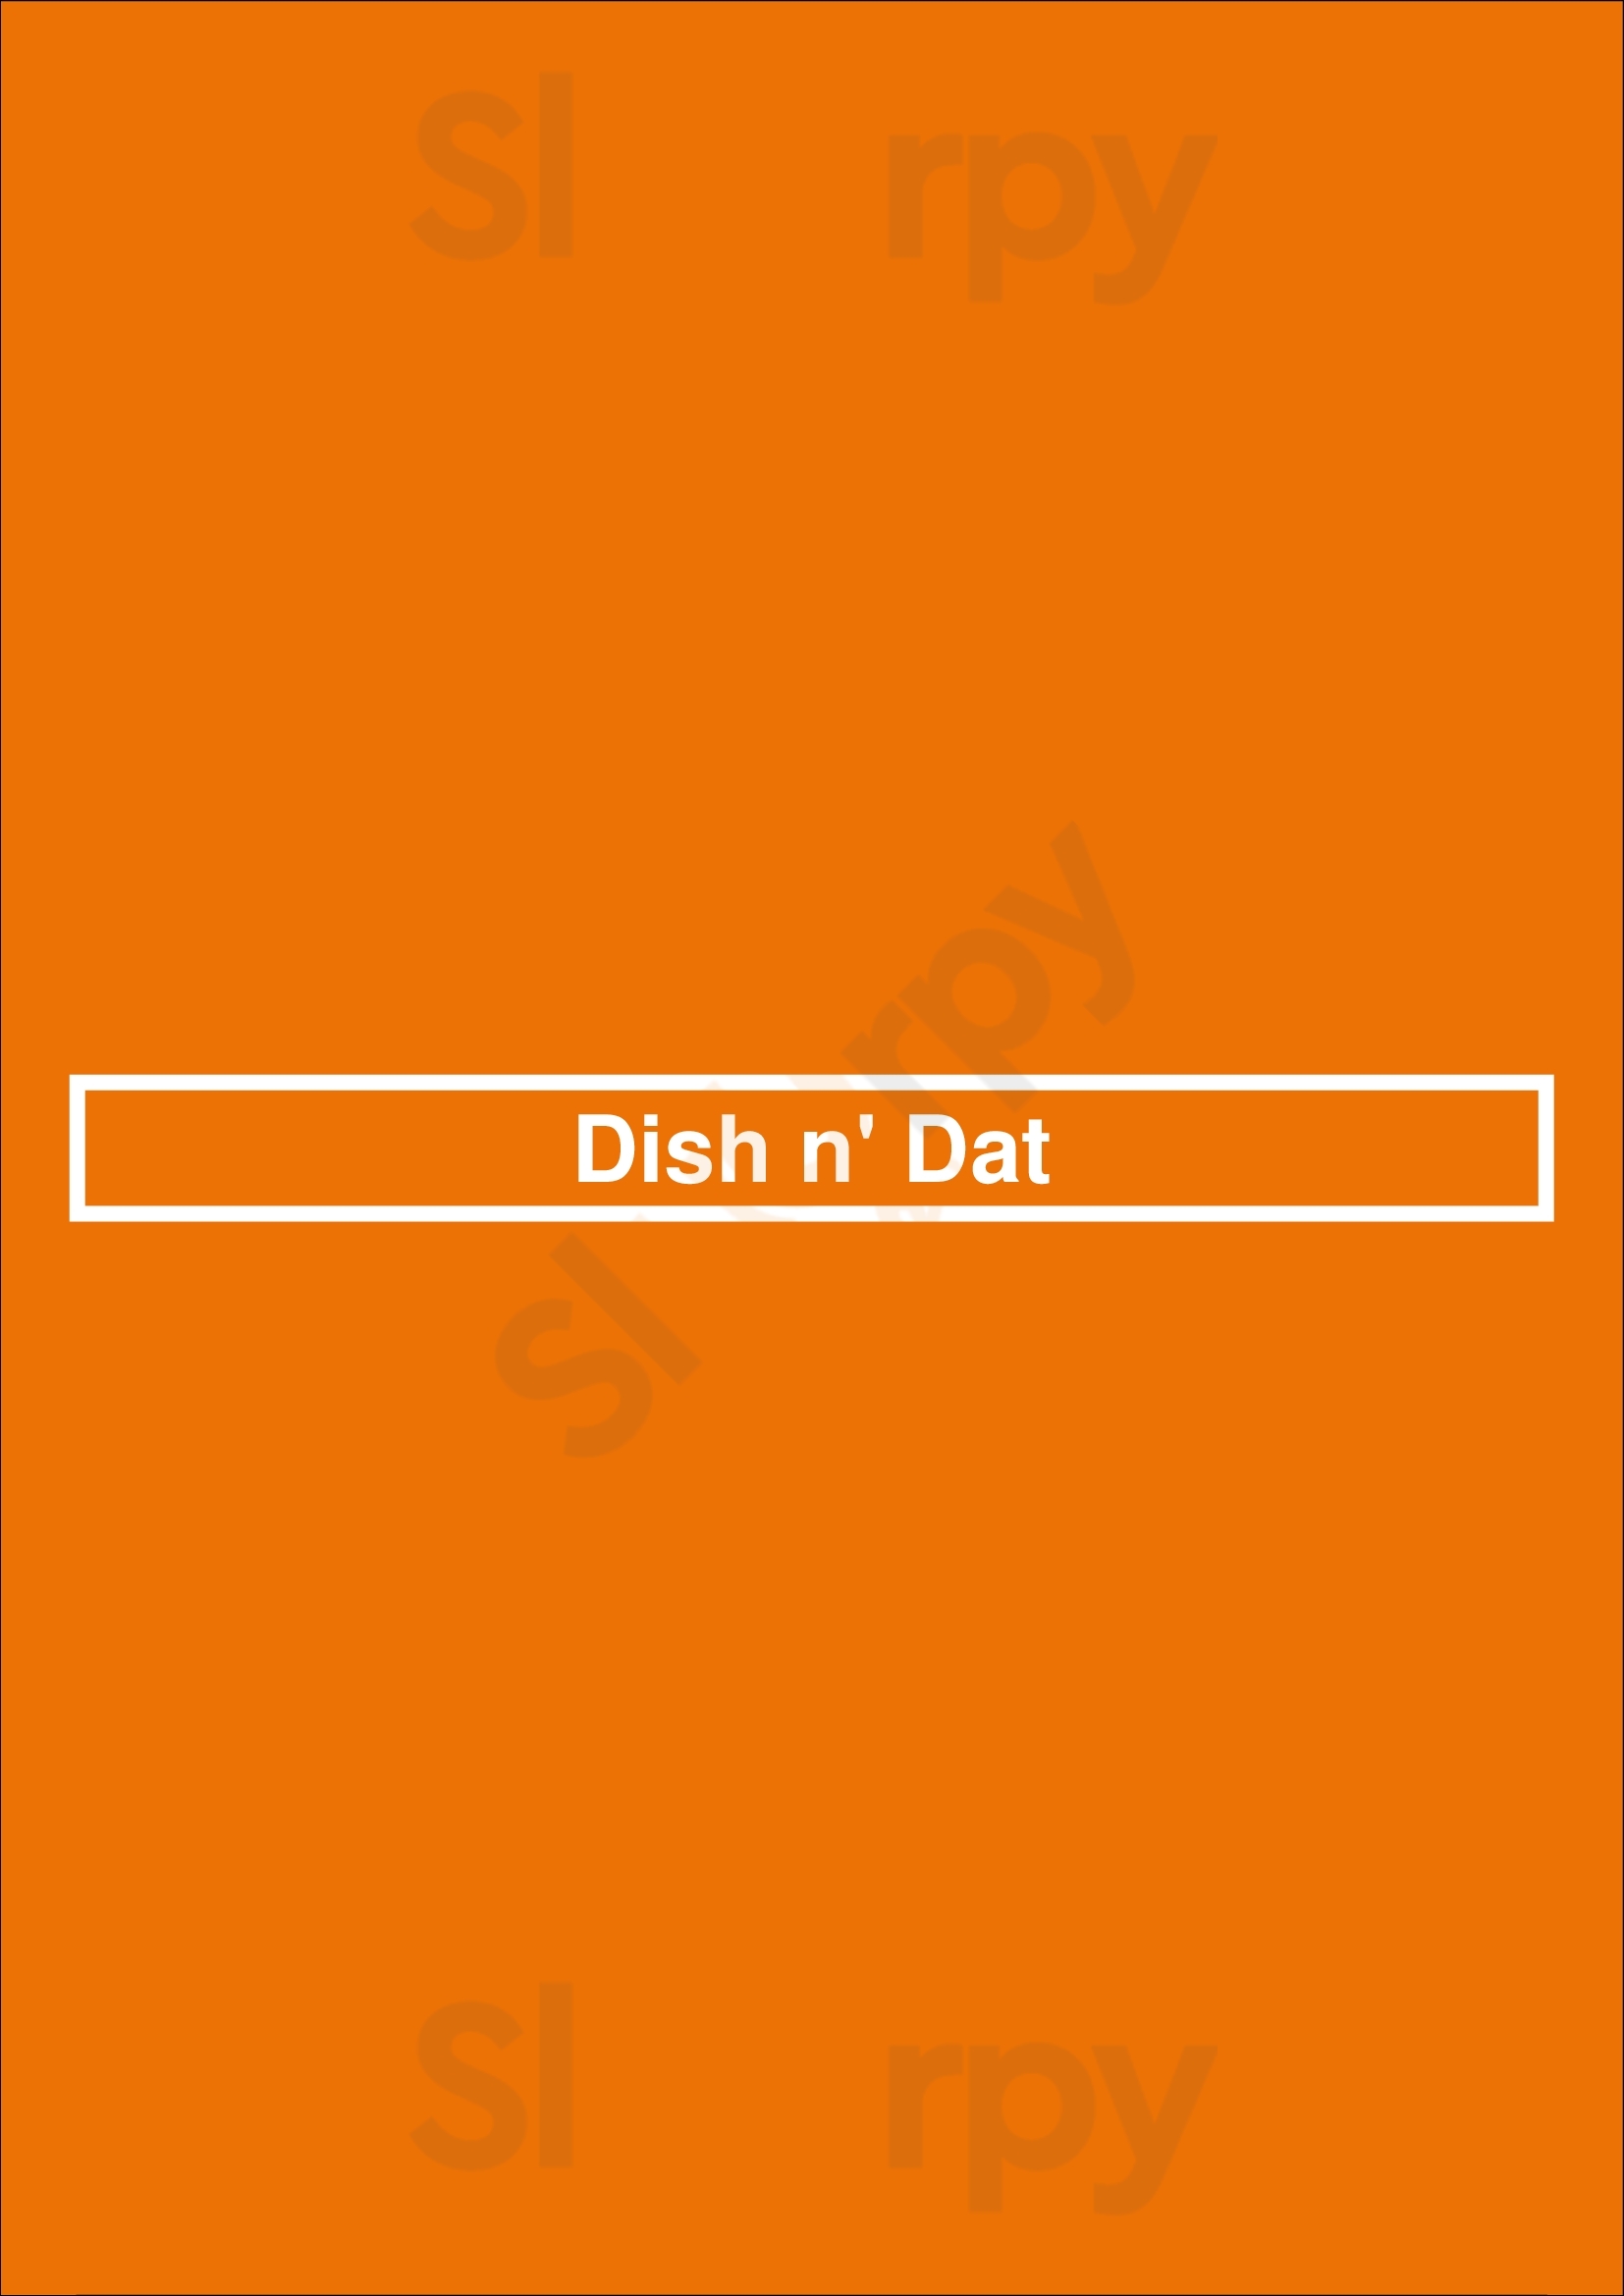 Dish N' Dat Canton Menu - 1